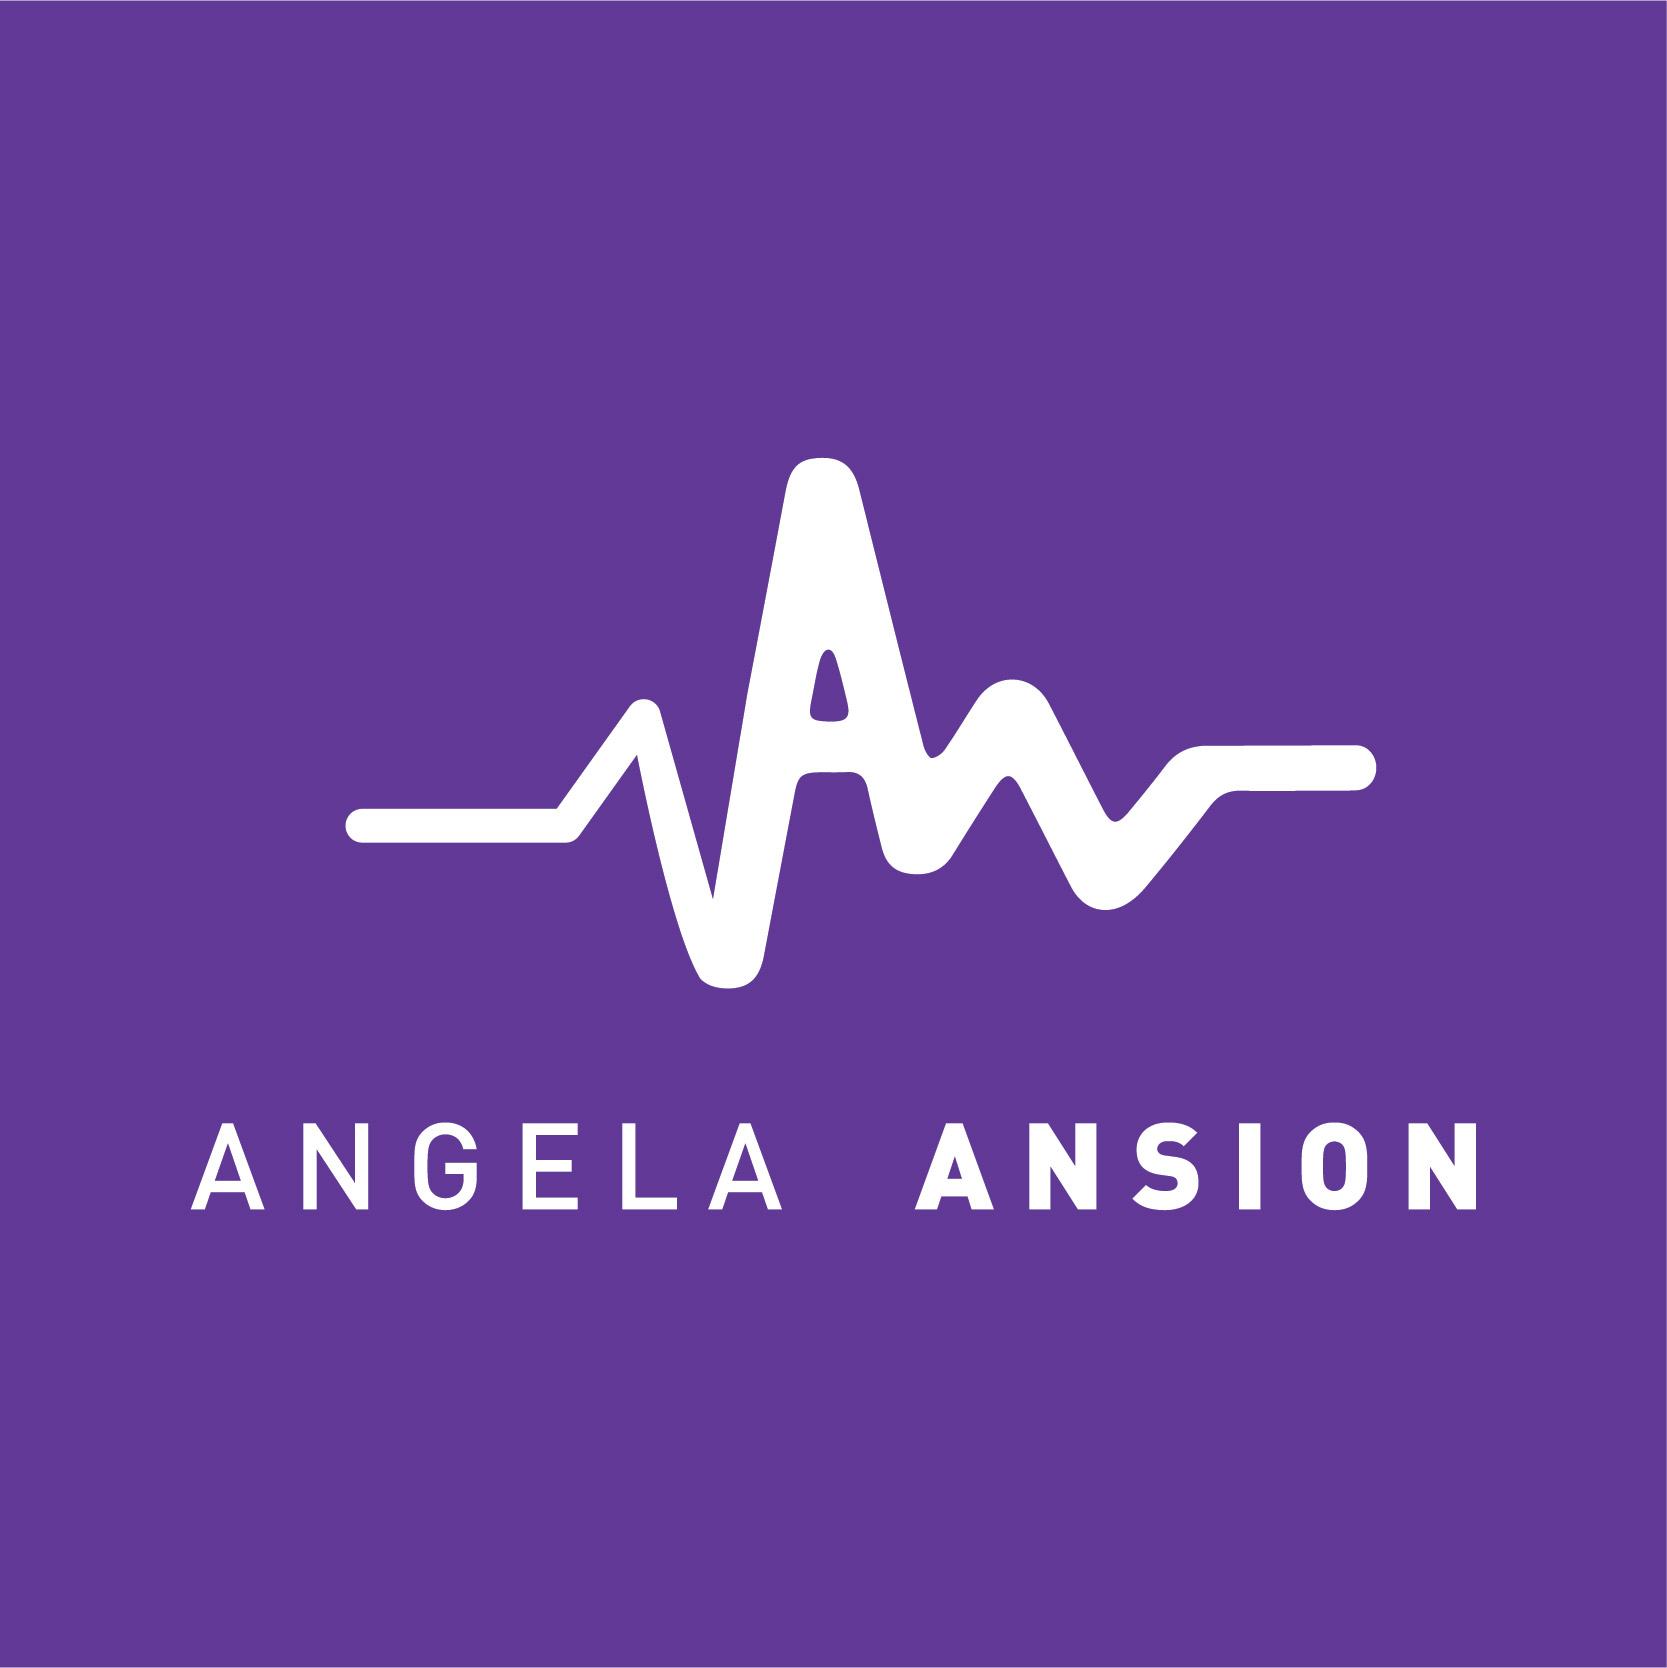 Angela Ansion Logo - Purple BG